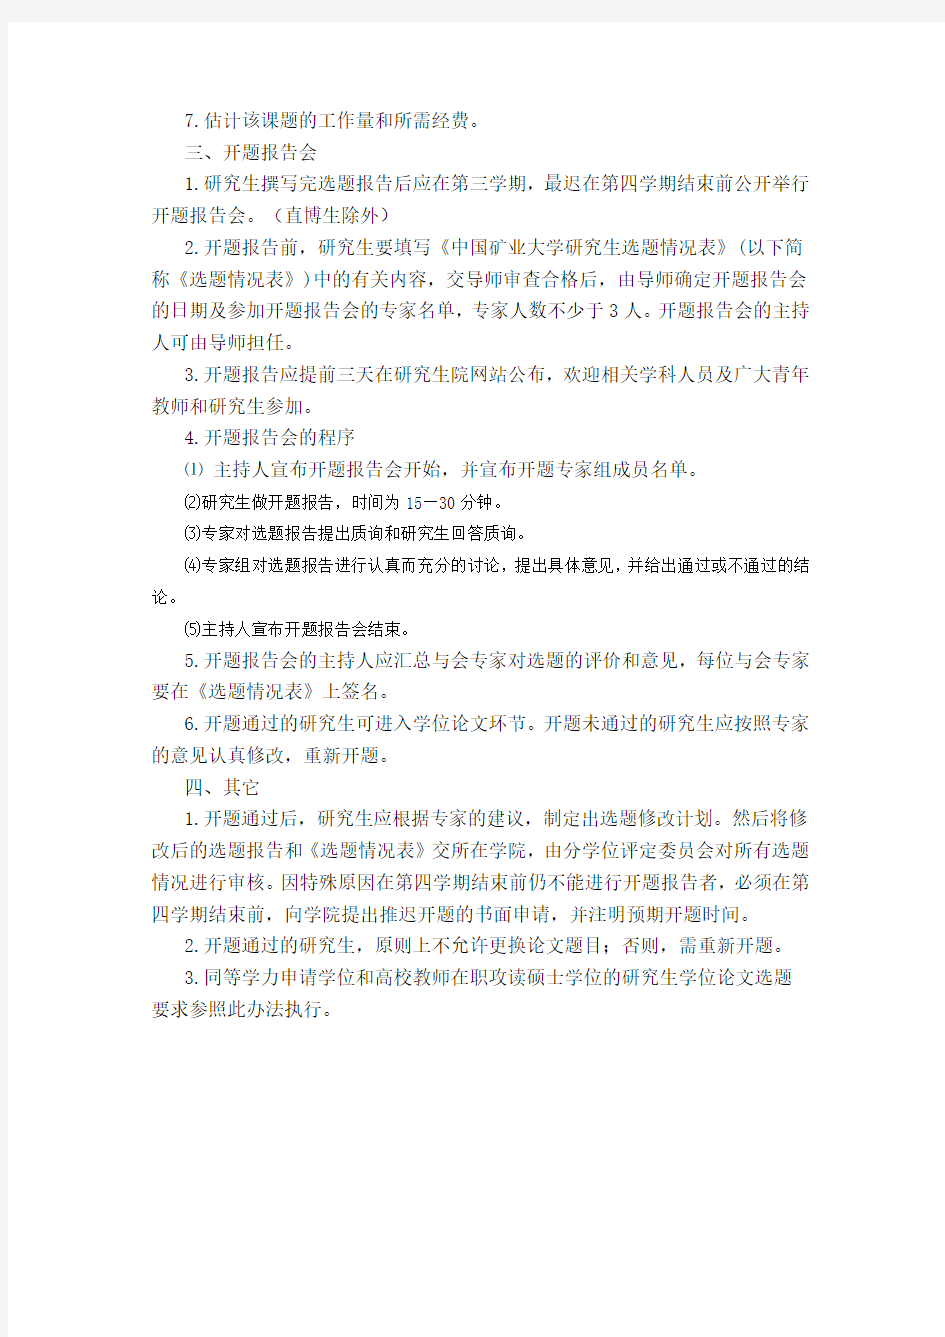 中国矿业大学关于全日制研究生学位论文选题工作的规定